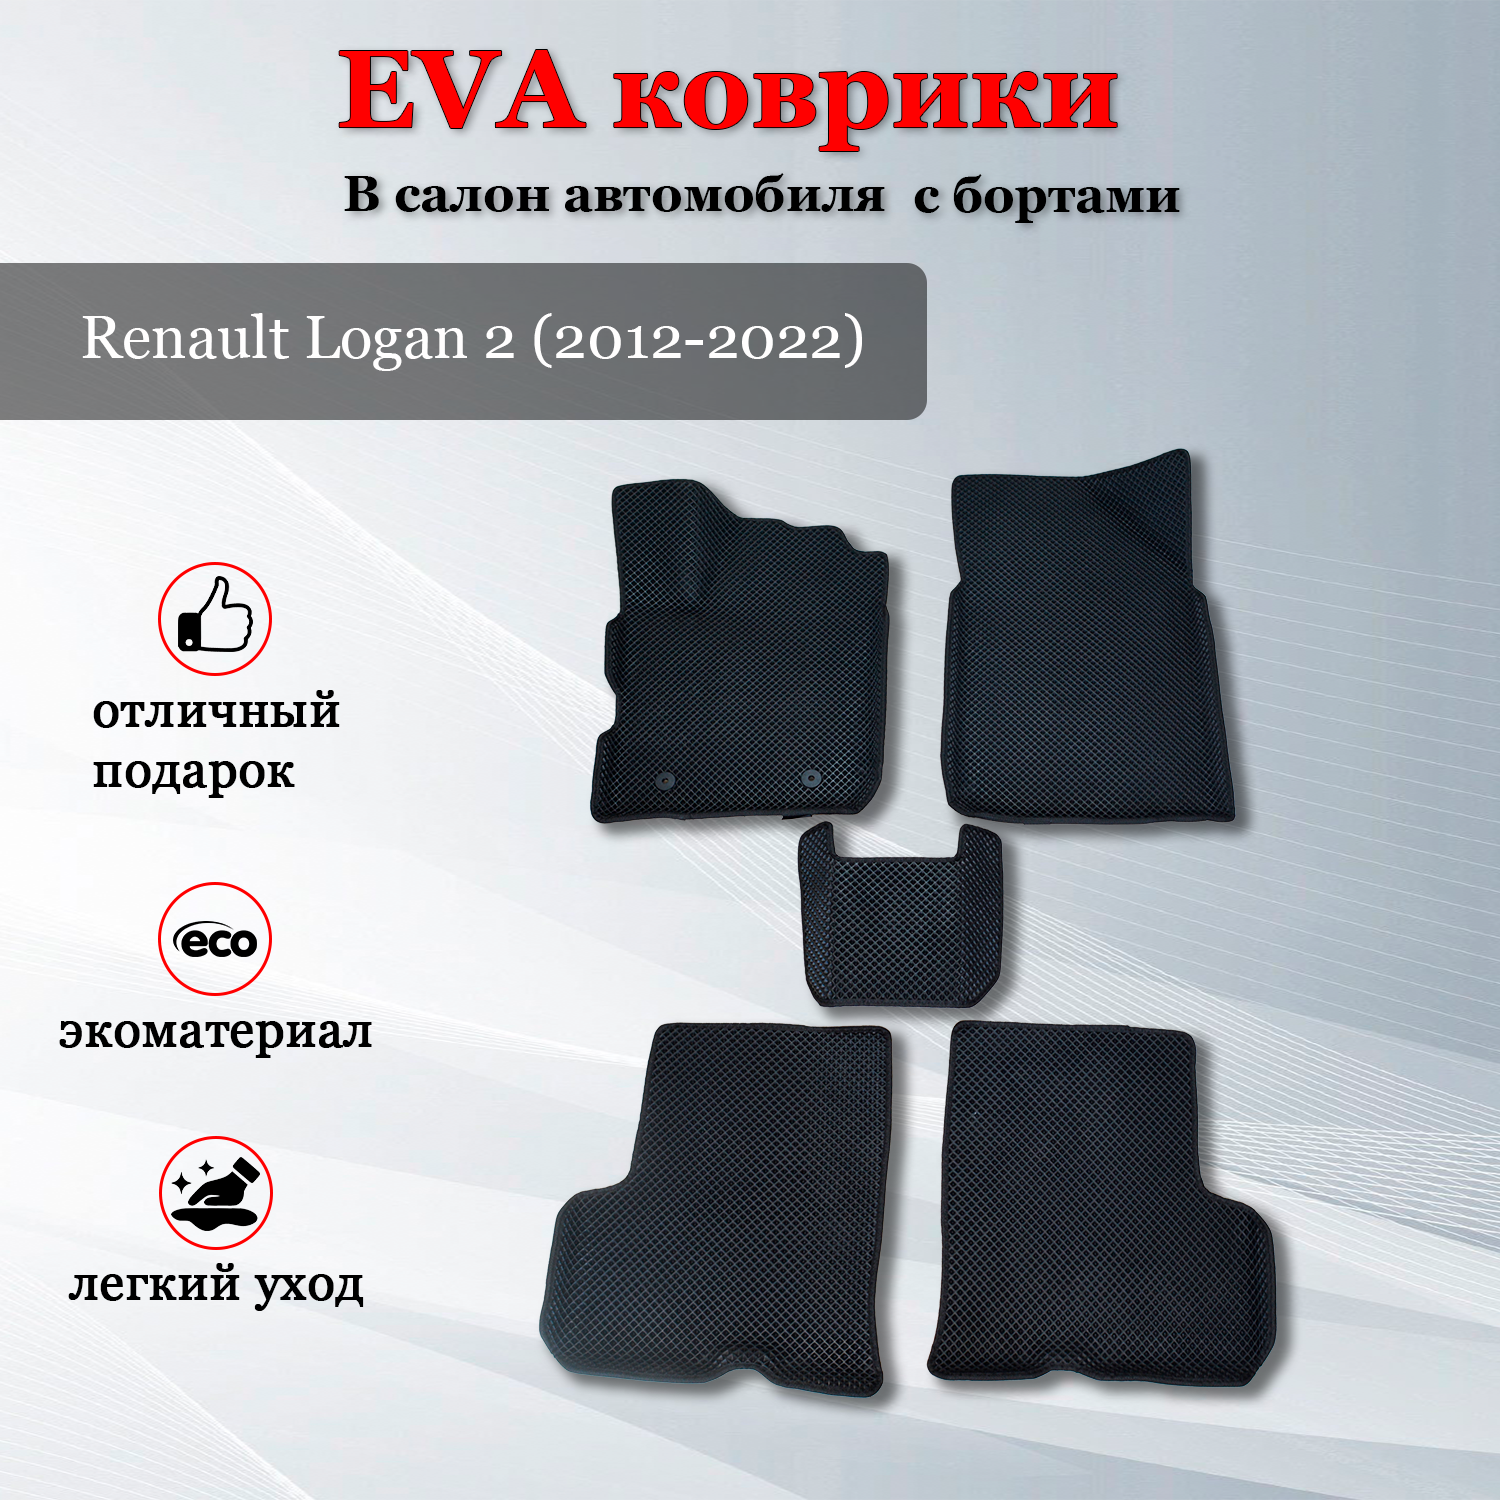 EVA (ЭВА ЕВА) коврики автомобильные с бортами в салон автомобиля для Рено Логан 2 / Renault Logan 2 (2012-2022)